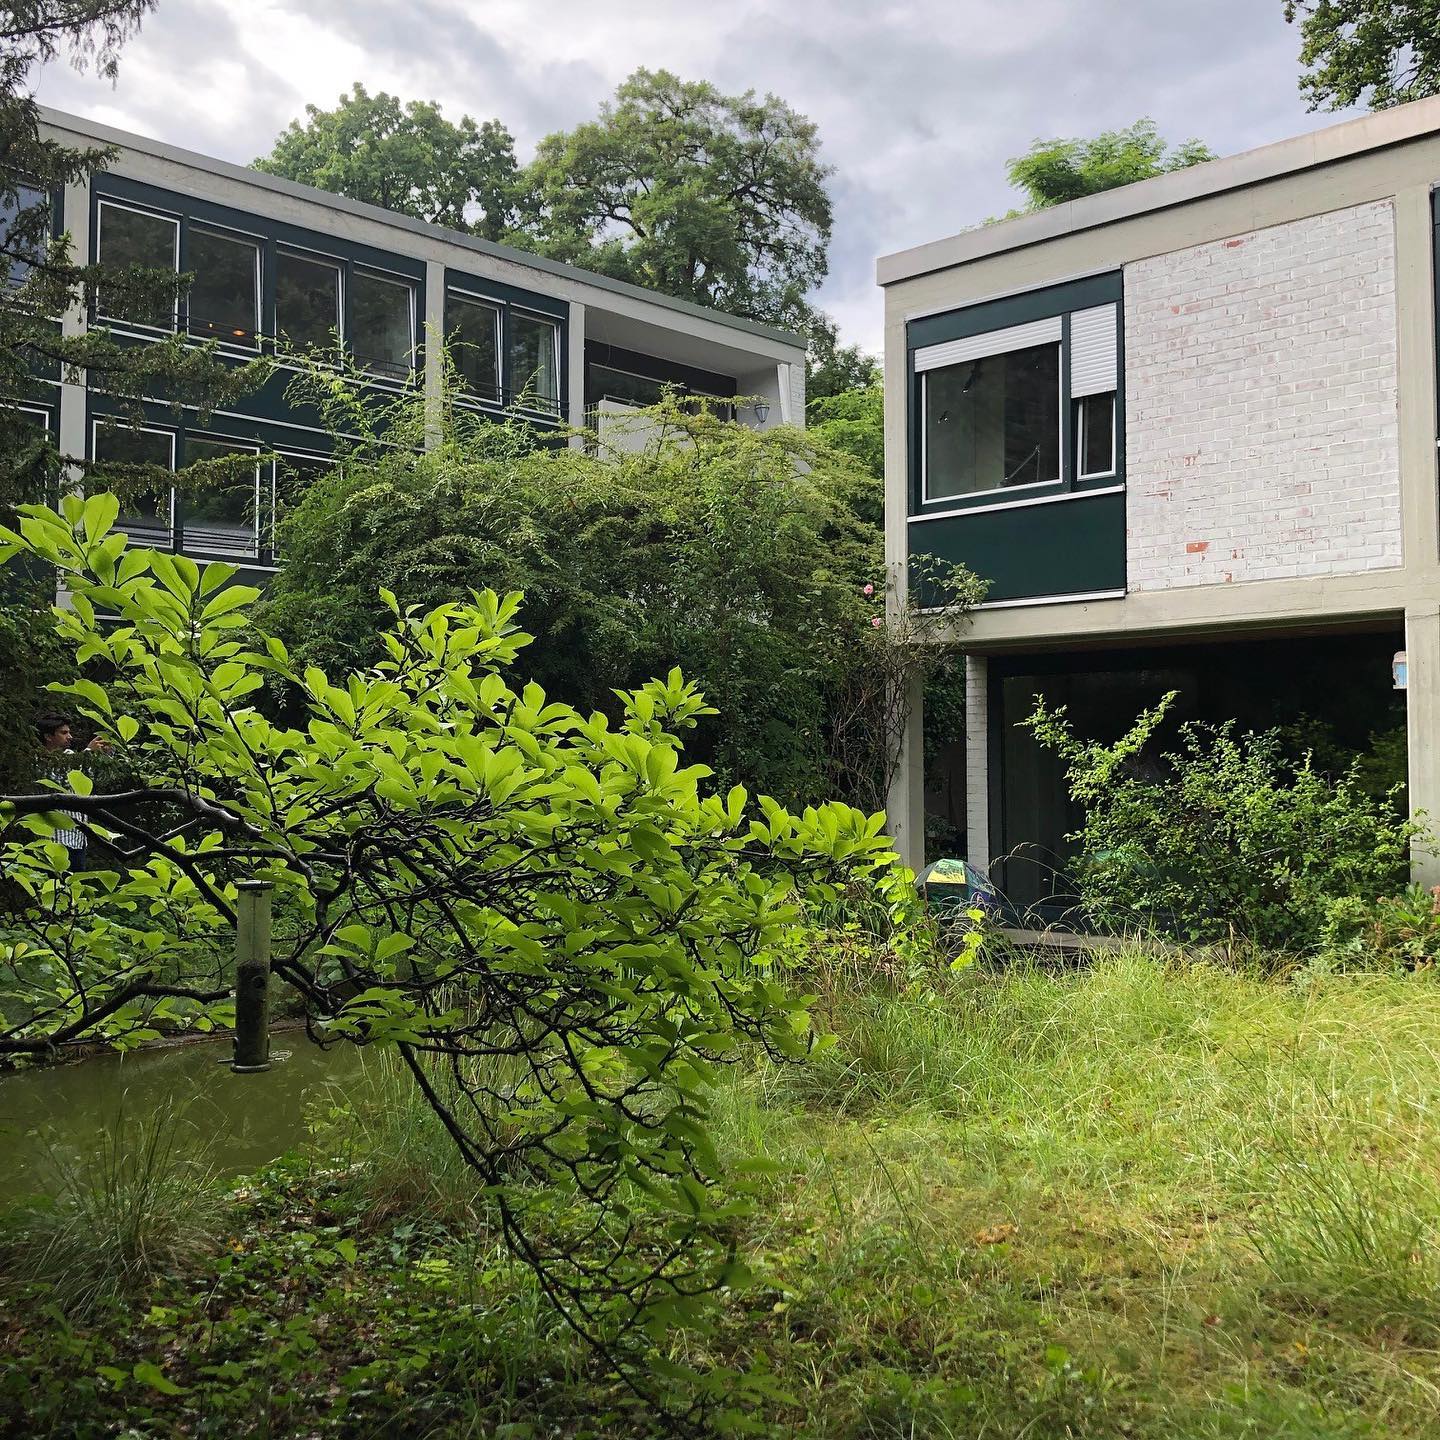 Am Freitag, den 24.6. durfte der Förderverein des Architekturmuseums das ehemalige Wohnhaus des Architekten Herbert…